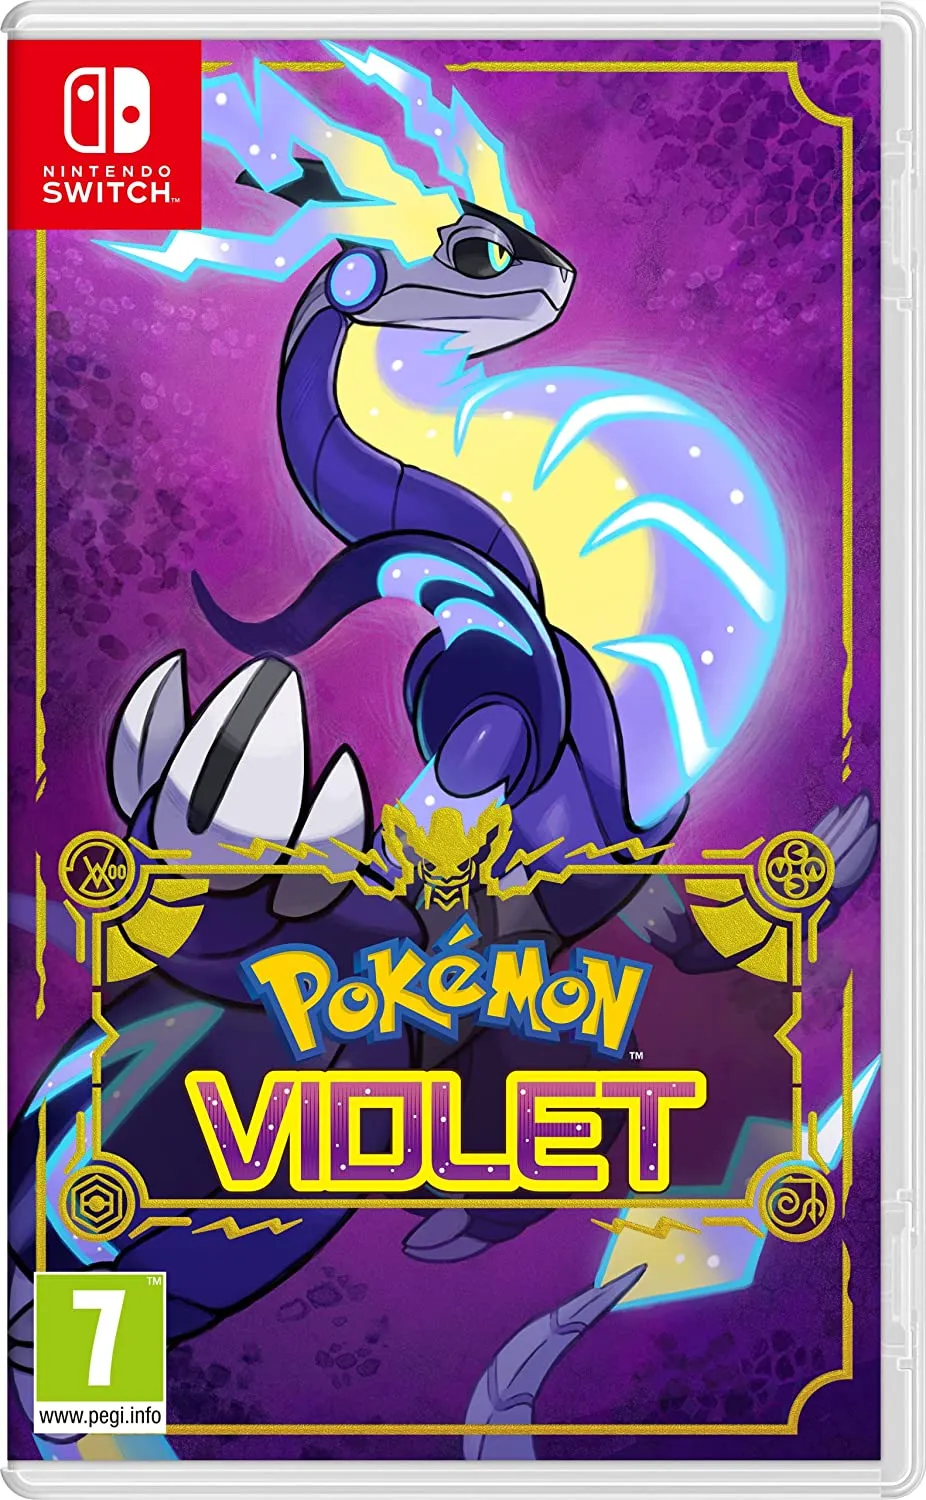 Pokémon Violet spelkonstverk för Nintendo Switch.